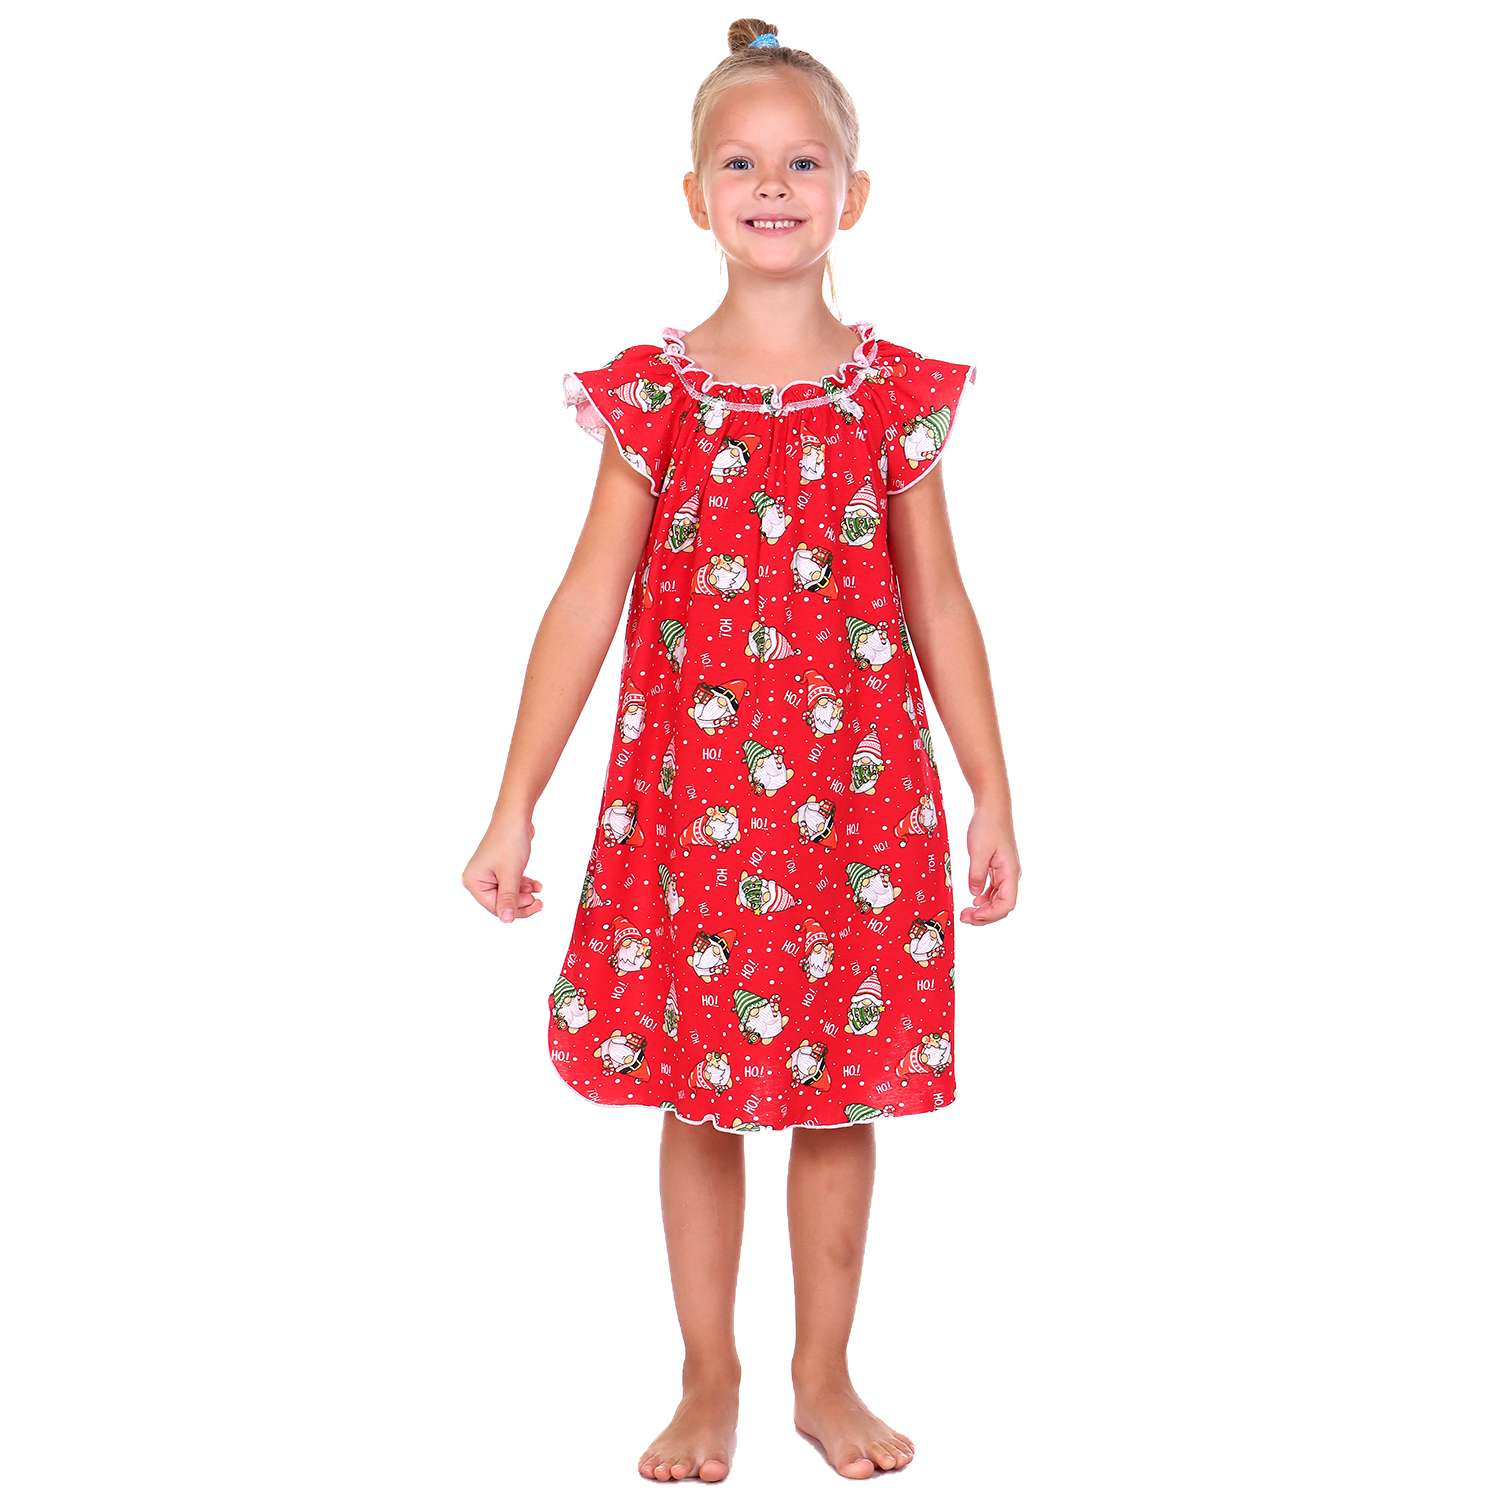 Сорочка ночная Детская Одежда 0003К/красный4 - фото 2